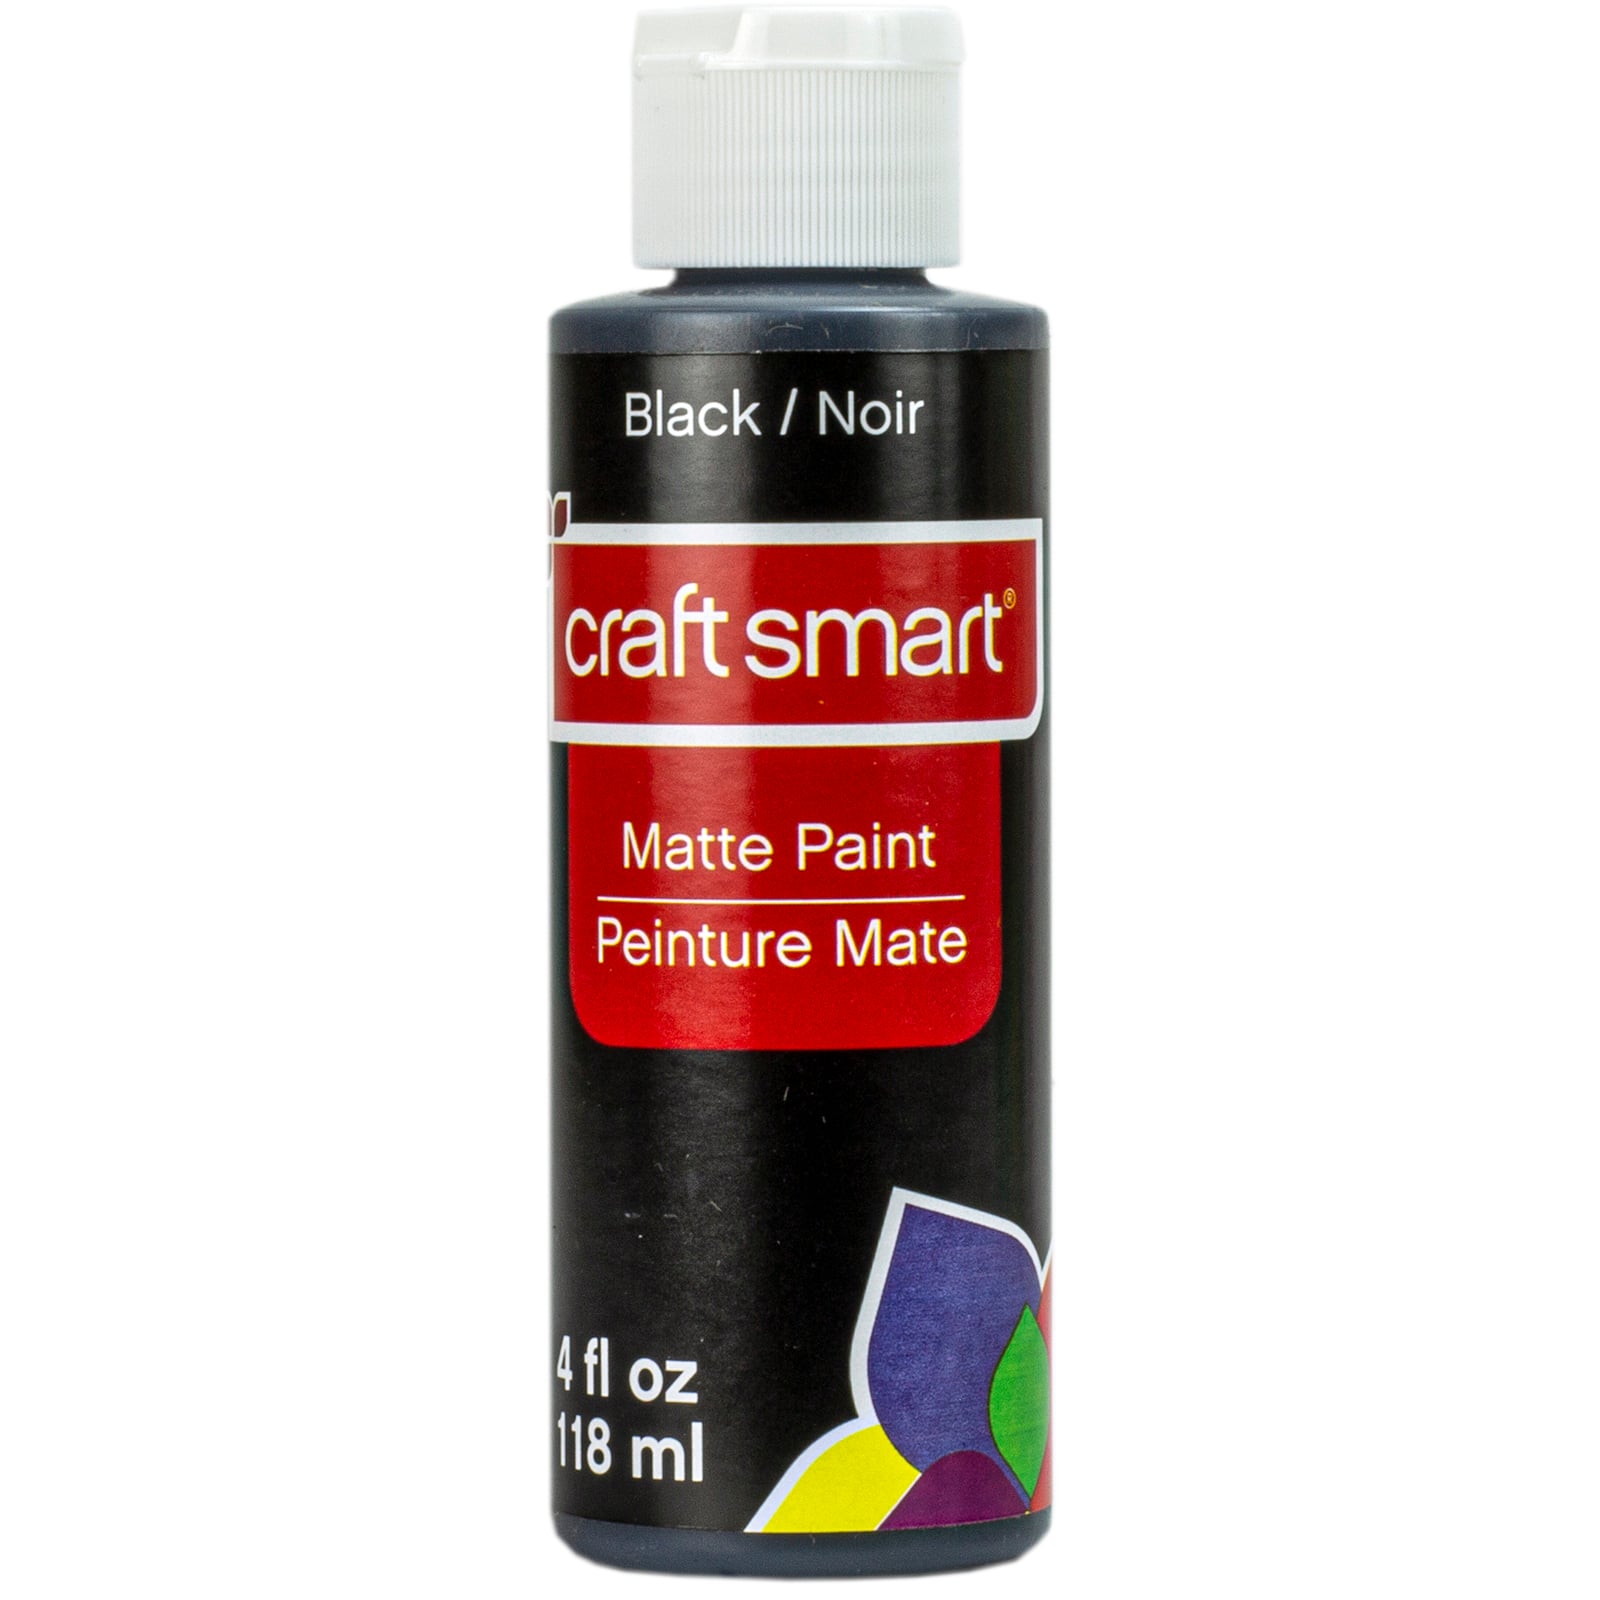 Acrylic Paints Category - CraftsVillage™ MarketHUB